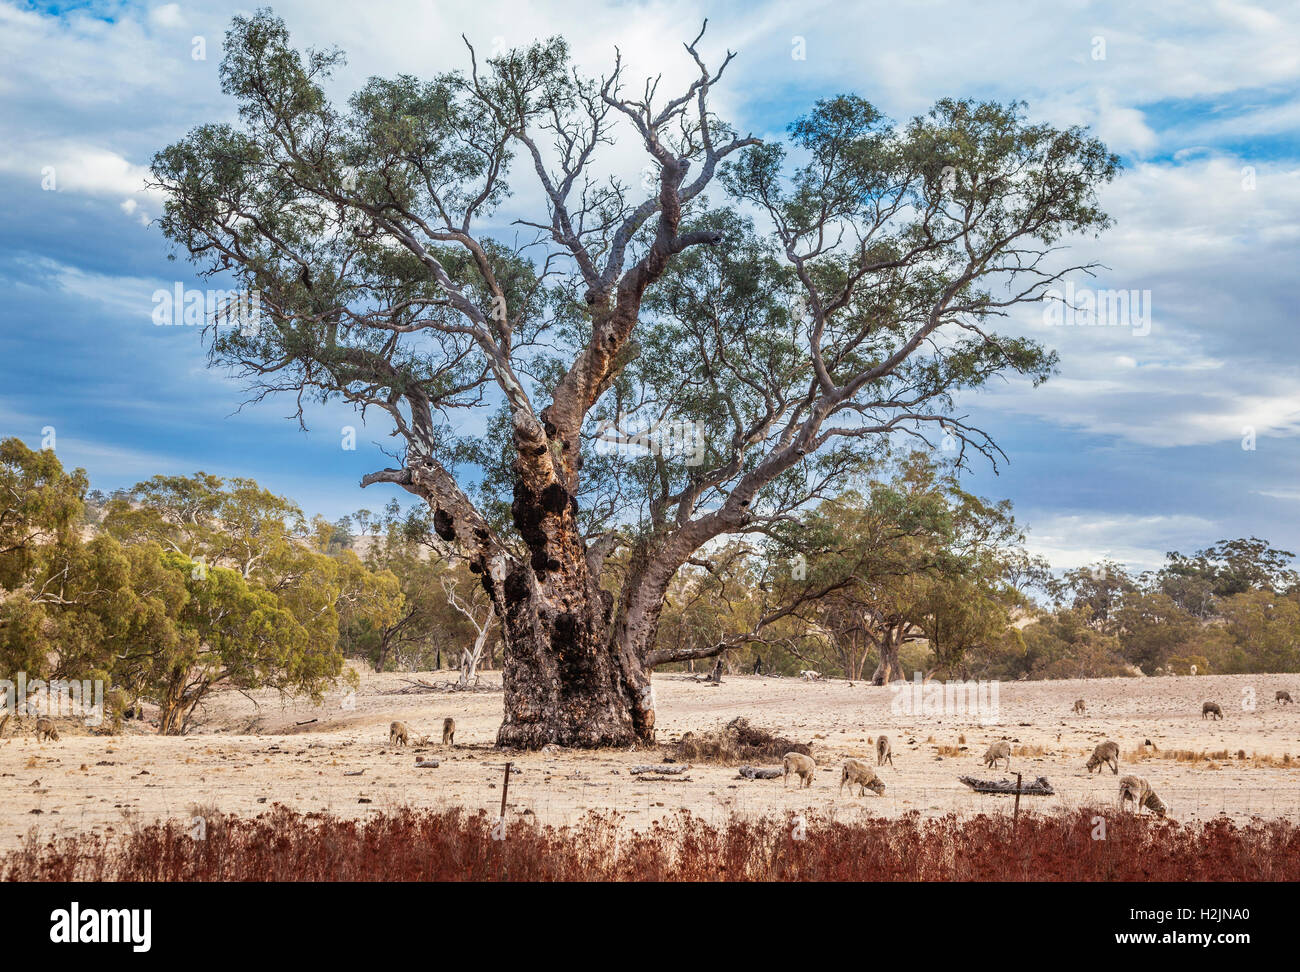 Des moutons paissant dans une ancienne gum tree dans les contreforts du Mont Remarkable près de Wilmington, dans le sud de l'Australie Banque D'Images